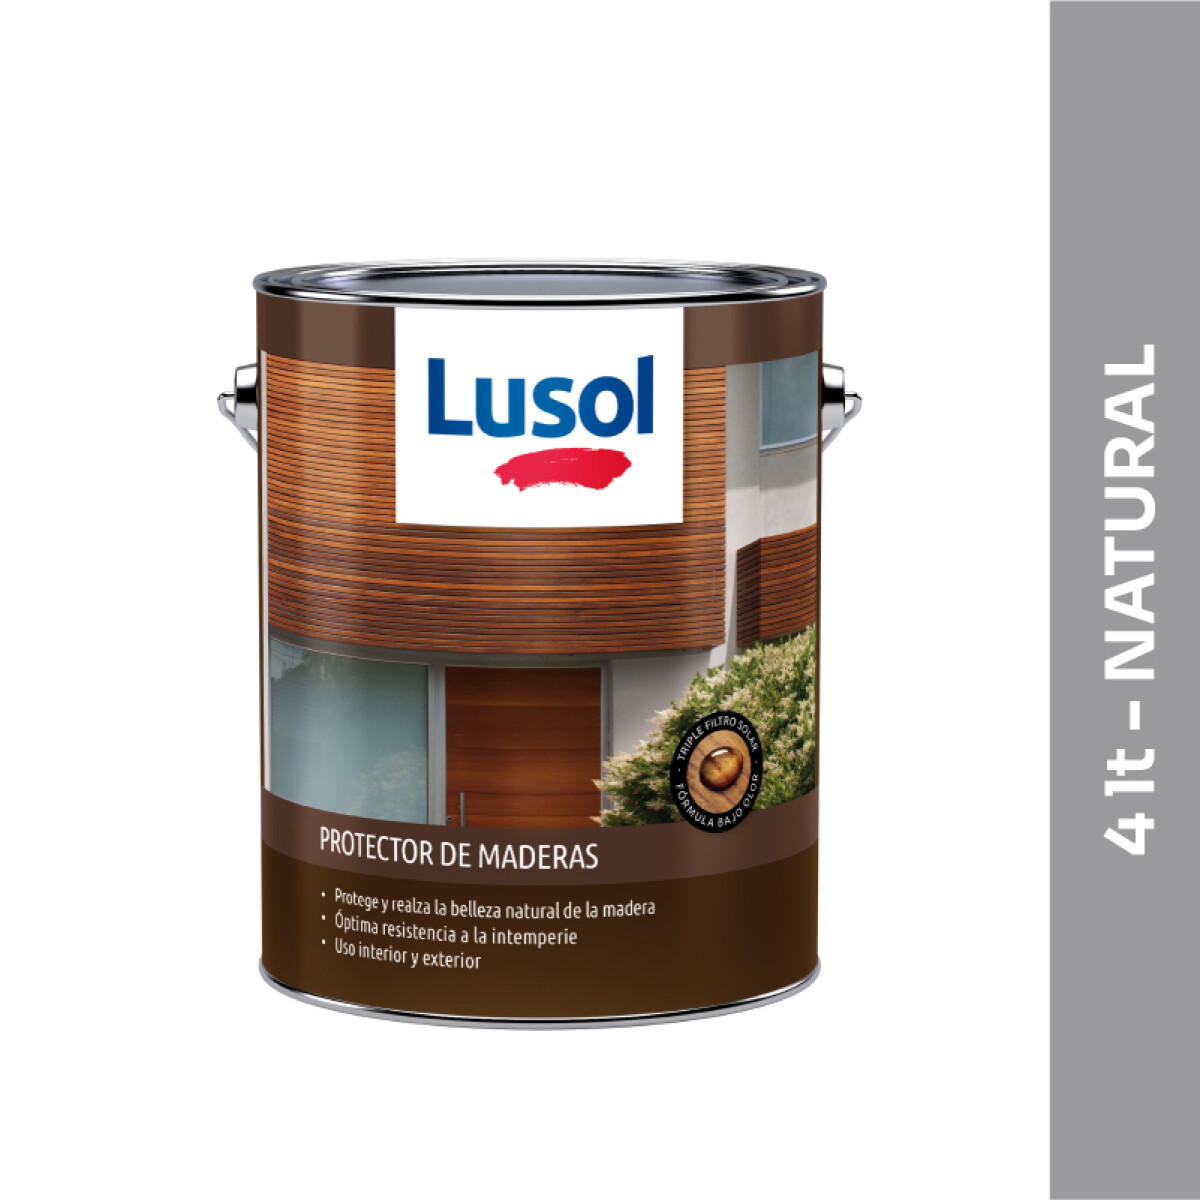 Protector de maderas Lusol - 4 lt - Natural 